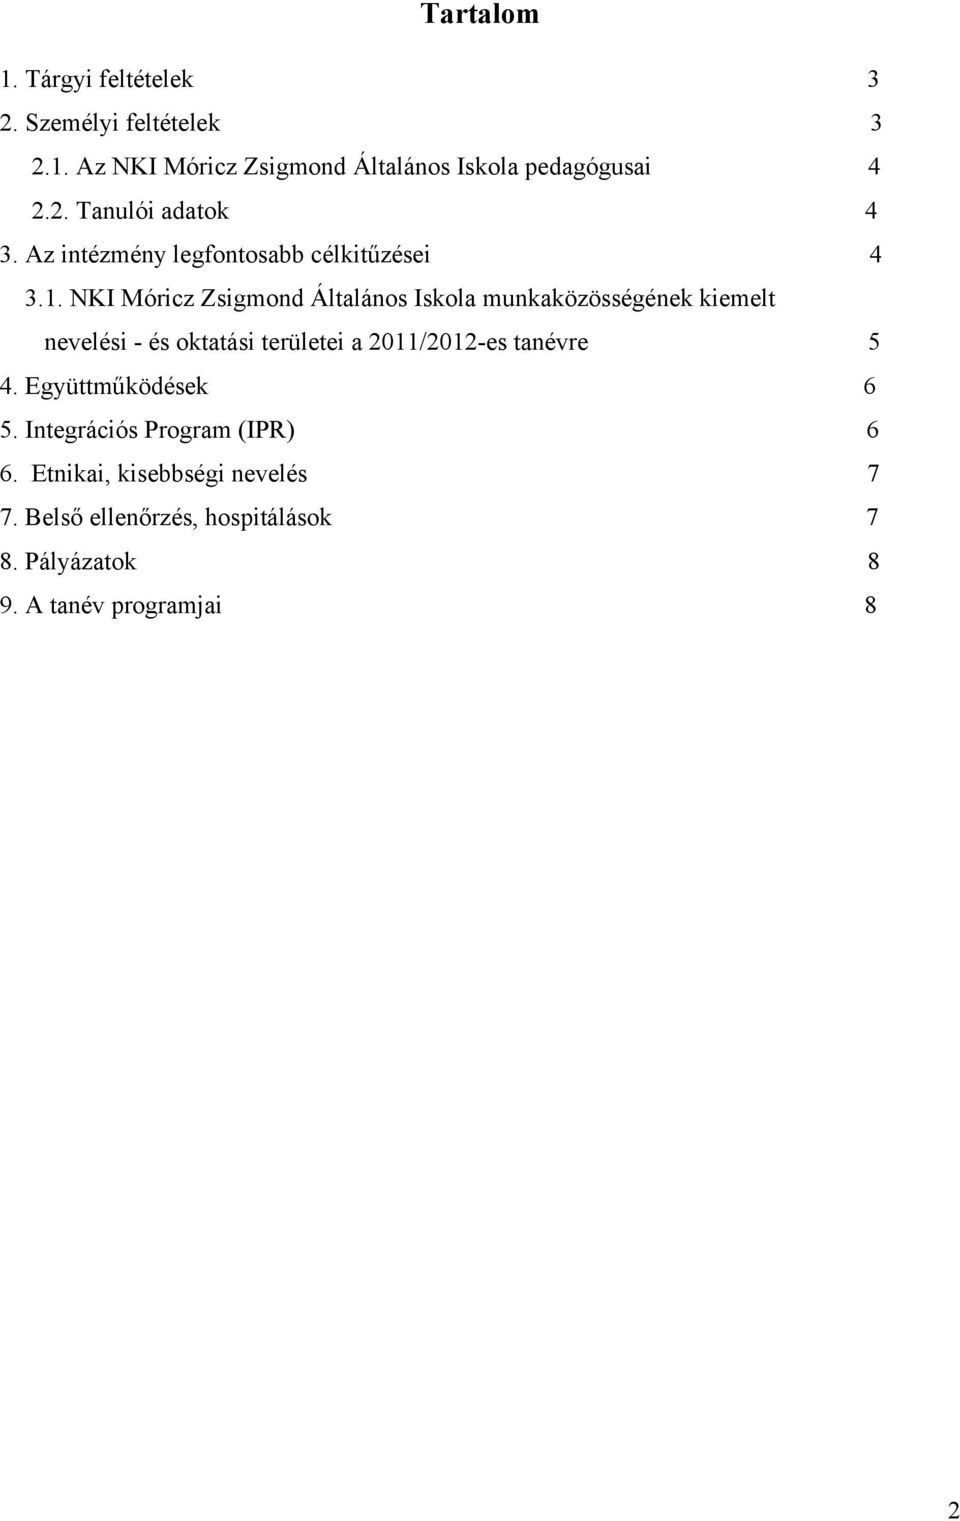 NKI Móricz Zsigmond Általános Iskola munkaközösségének kiemelt nevelési - és oktatási területei a 2011/2012-es